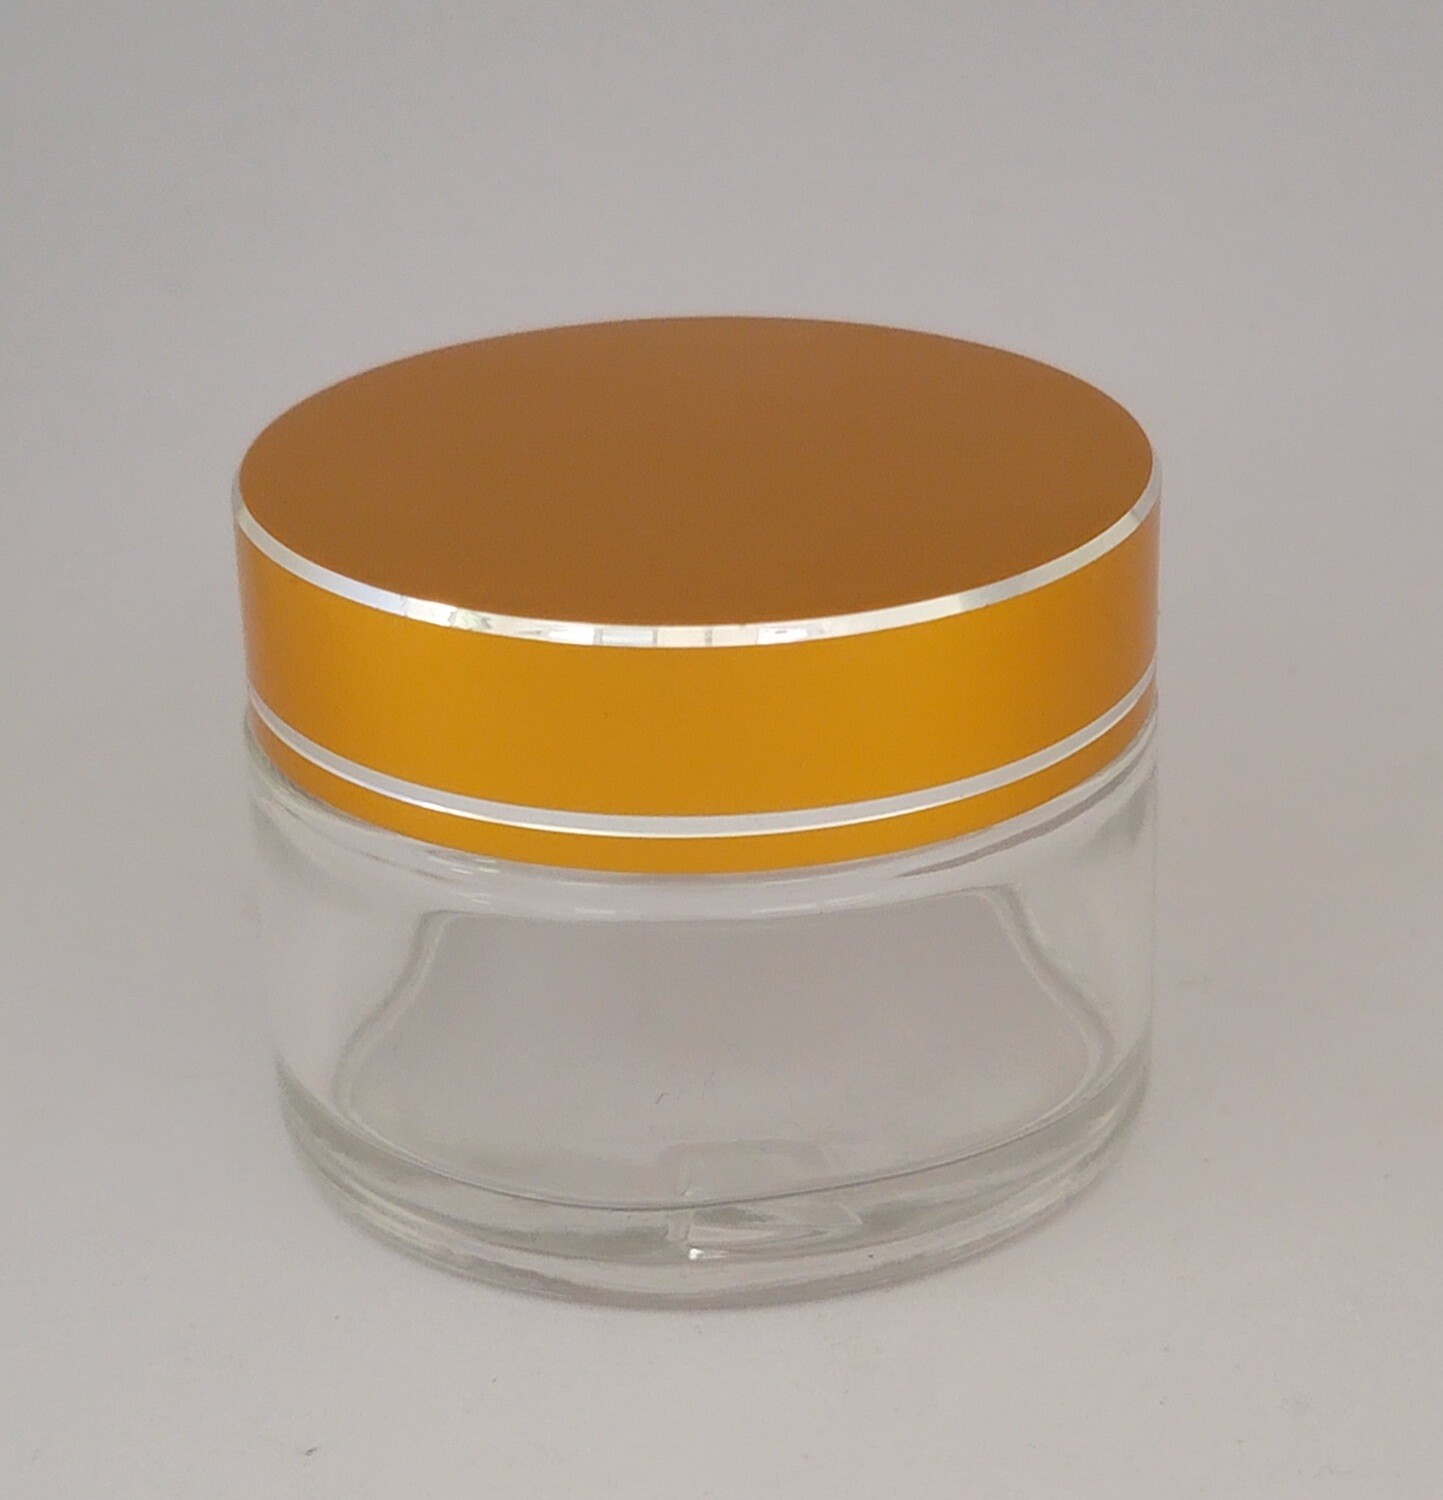 50g CLEAR Glass QUALITY Balm Pot with Caska Seal & MATT GOLD Screw Cap